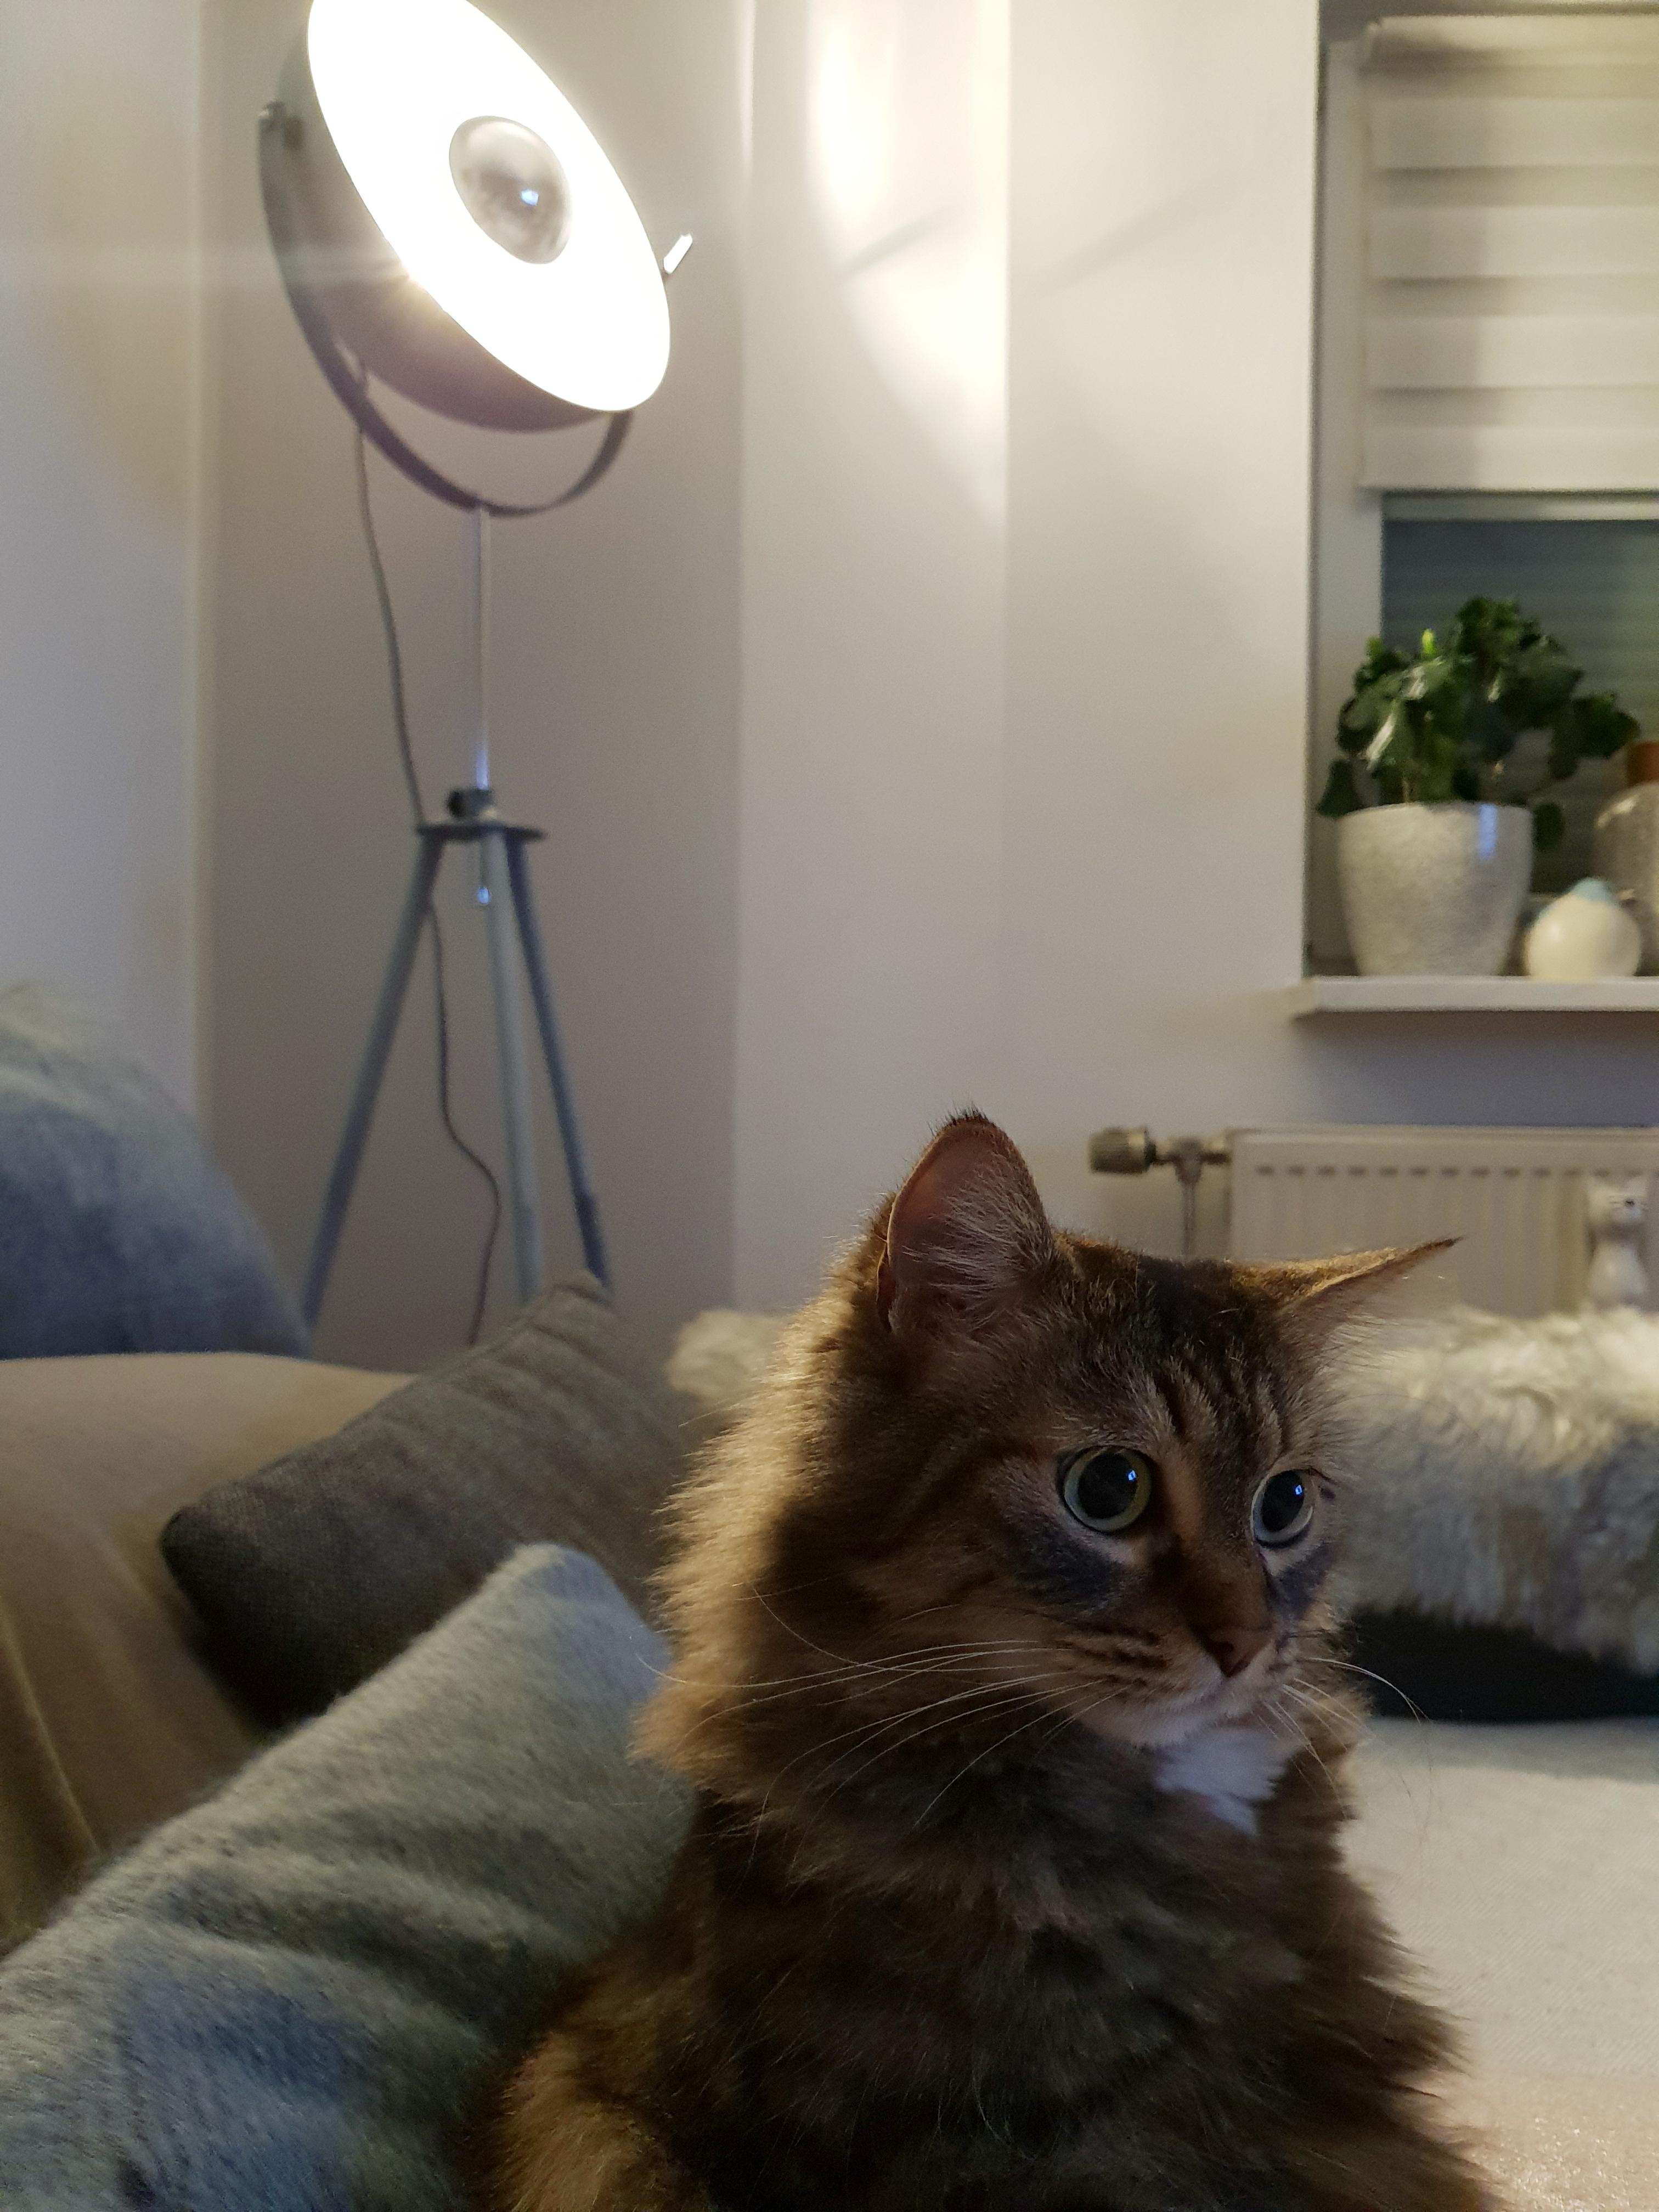 Flauschige Mimi 😊😻 #katze #wohnzimmer #couch #lampe